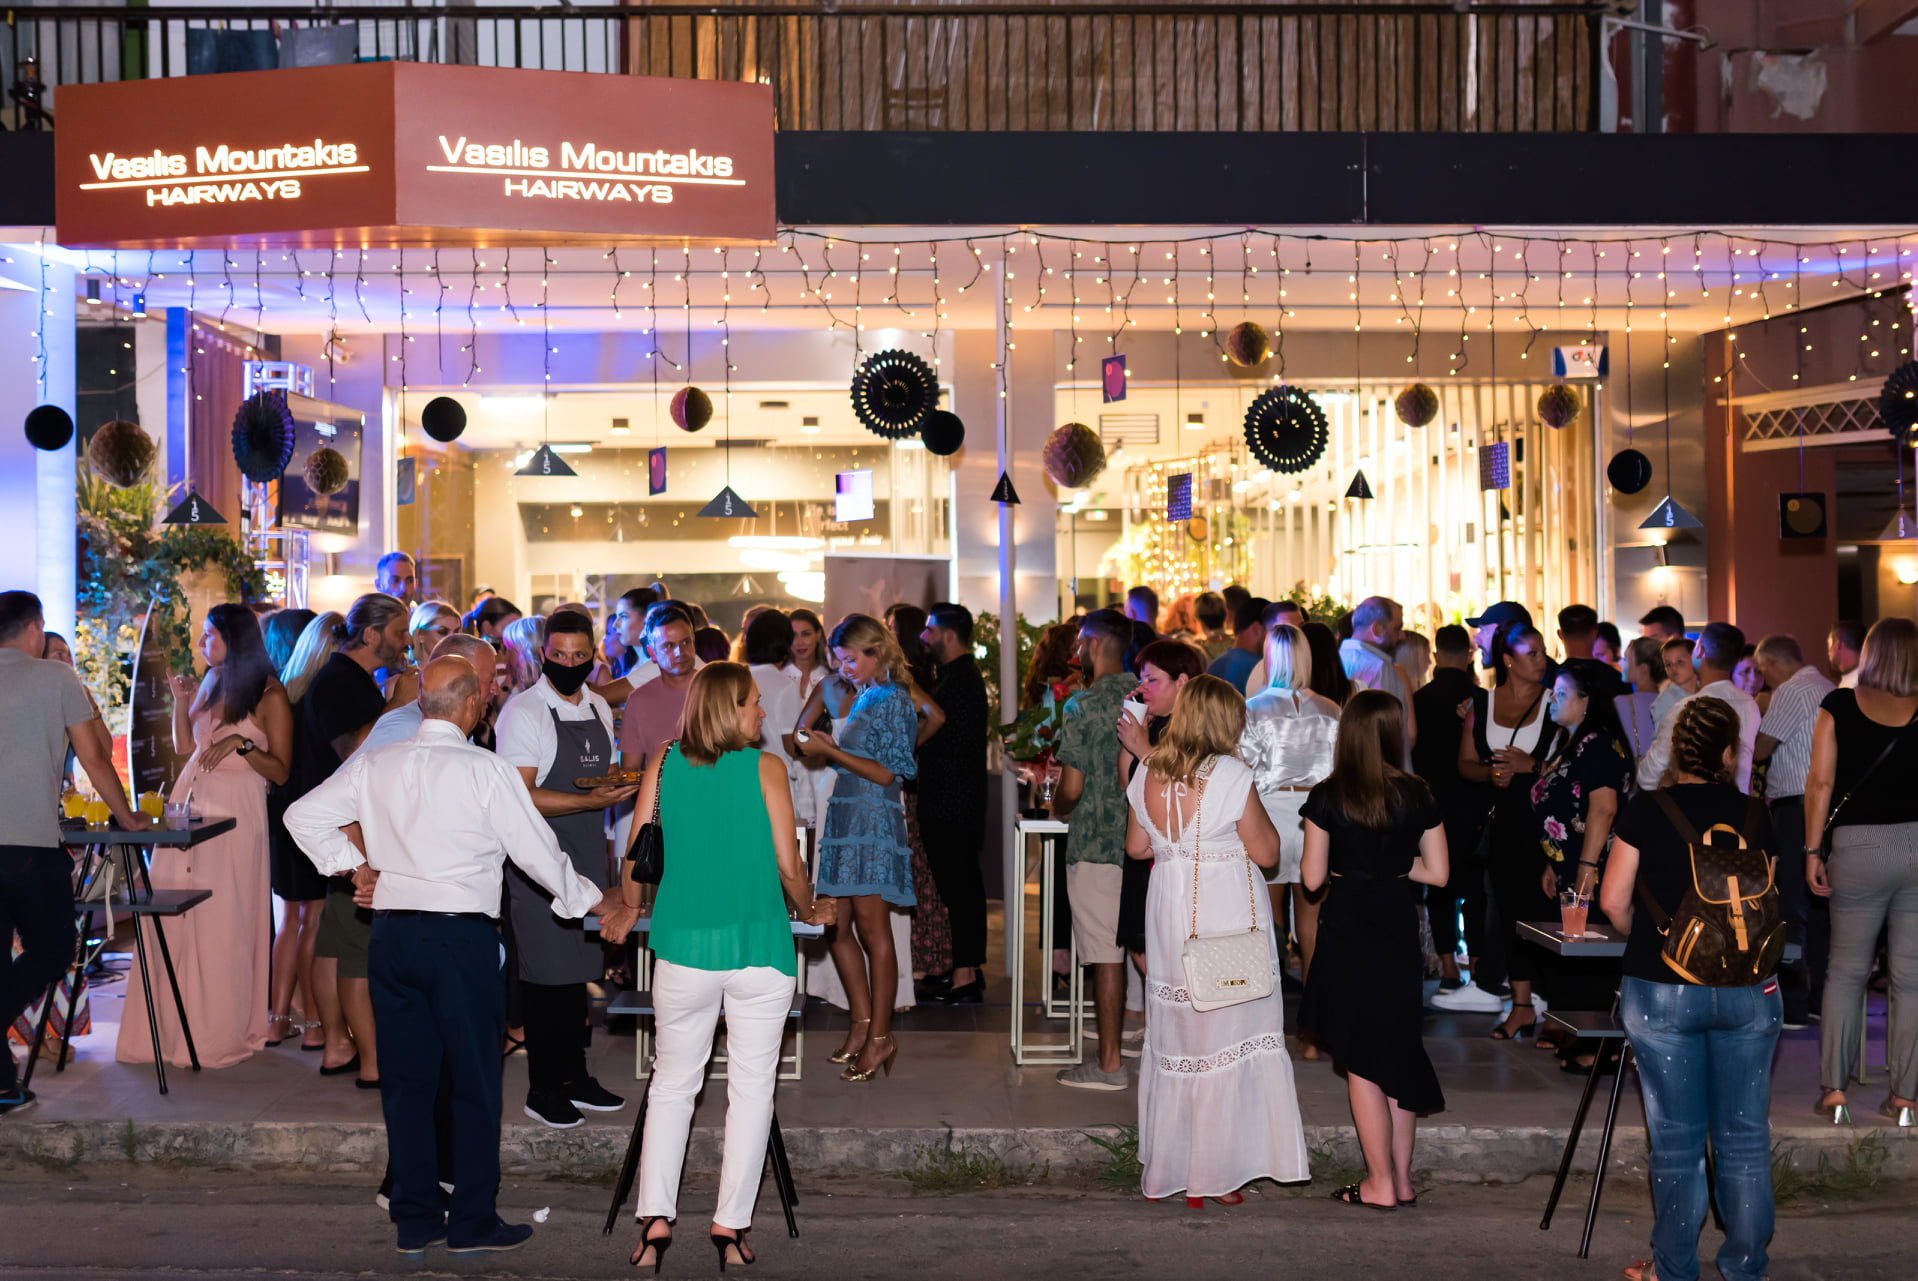 Χανιά: Φωτογραφίες από το πάρτι γενεθλίων στο κομμωτήριο Vasilis Mountakis